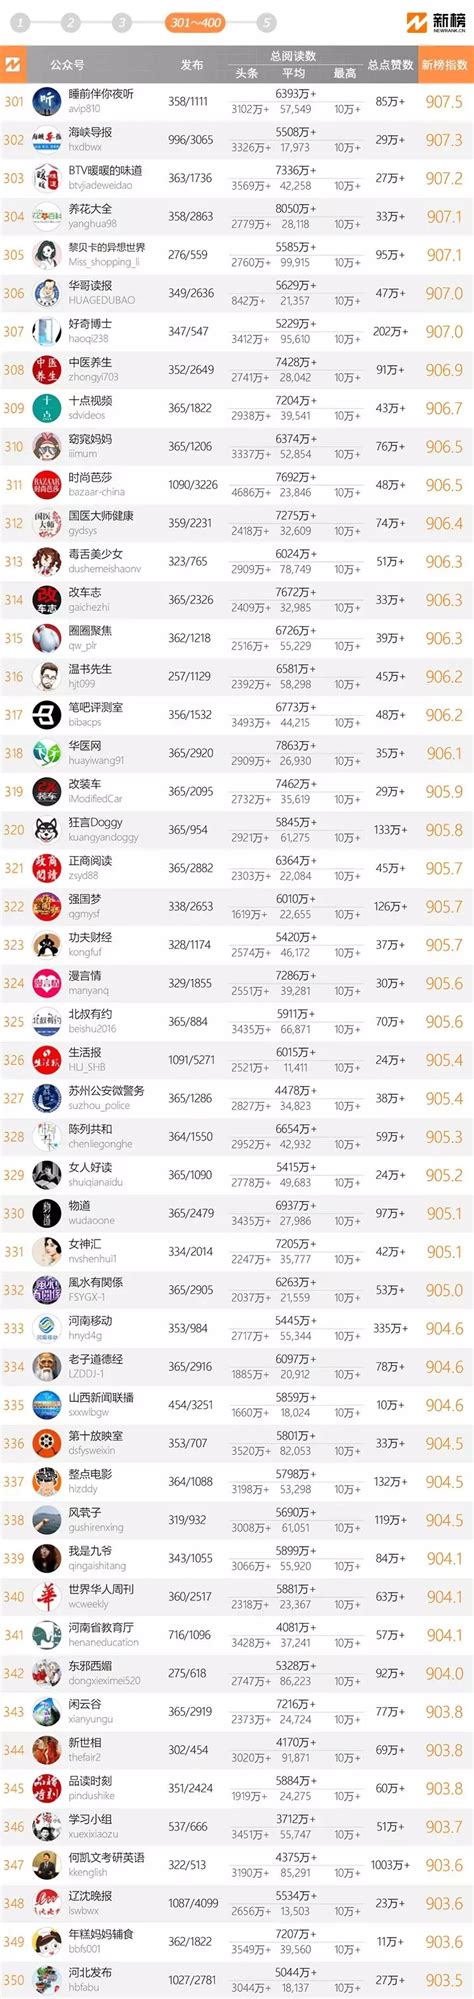 十大微信公众号排名榜-2018中国微信500强排名榜(阅读量排序)_排行榜123网